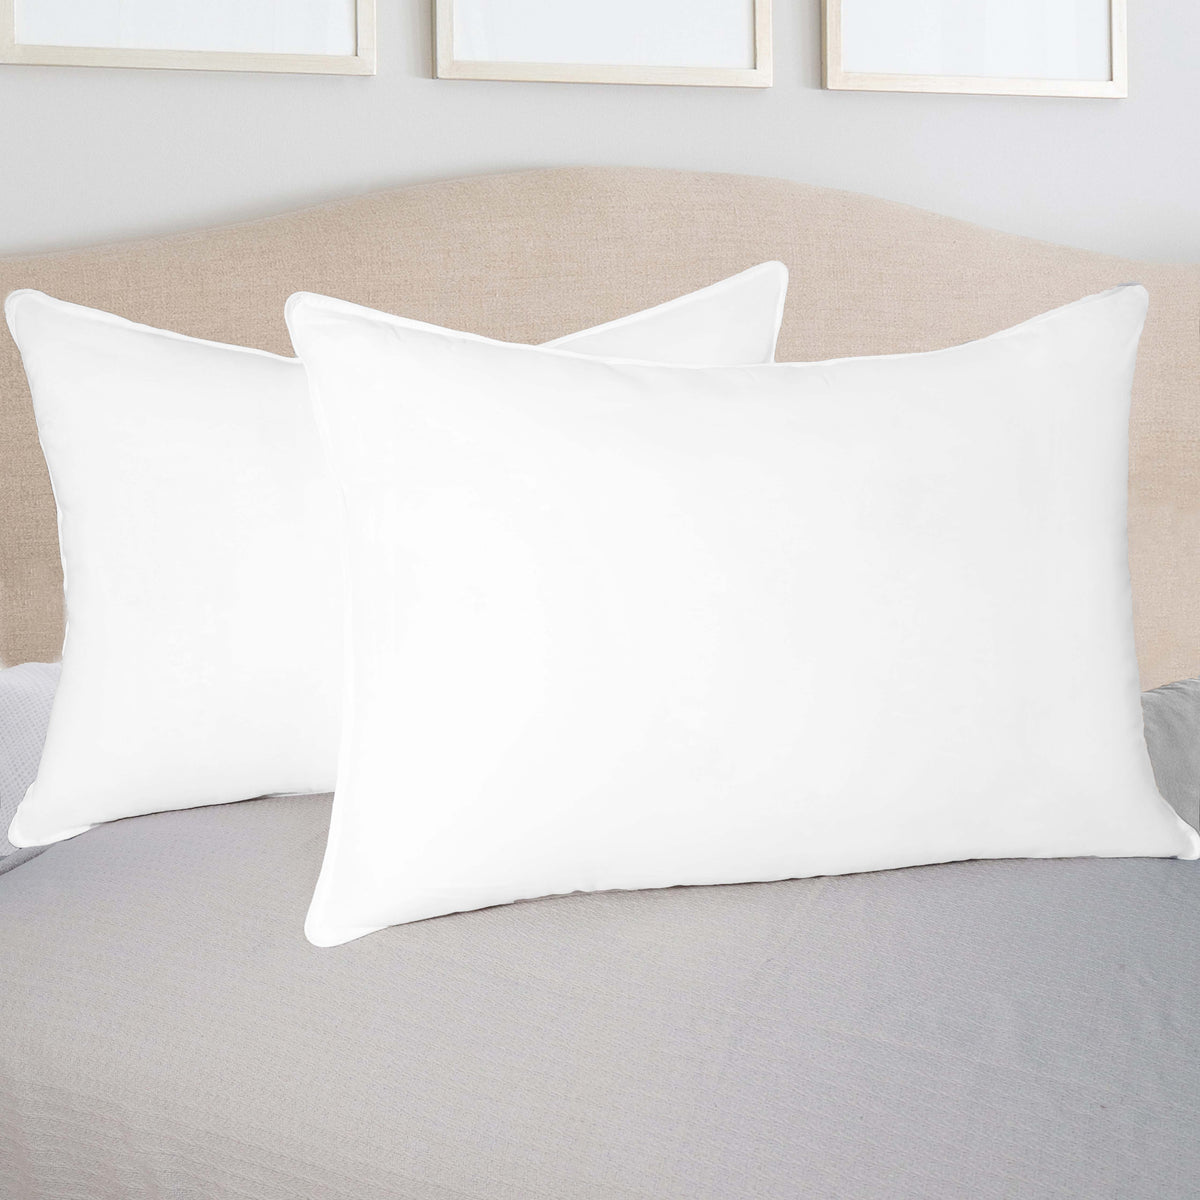 Down Alternative Hypoallergenic Medium Weight 2 Piece Pillow Set - White